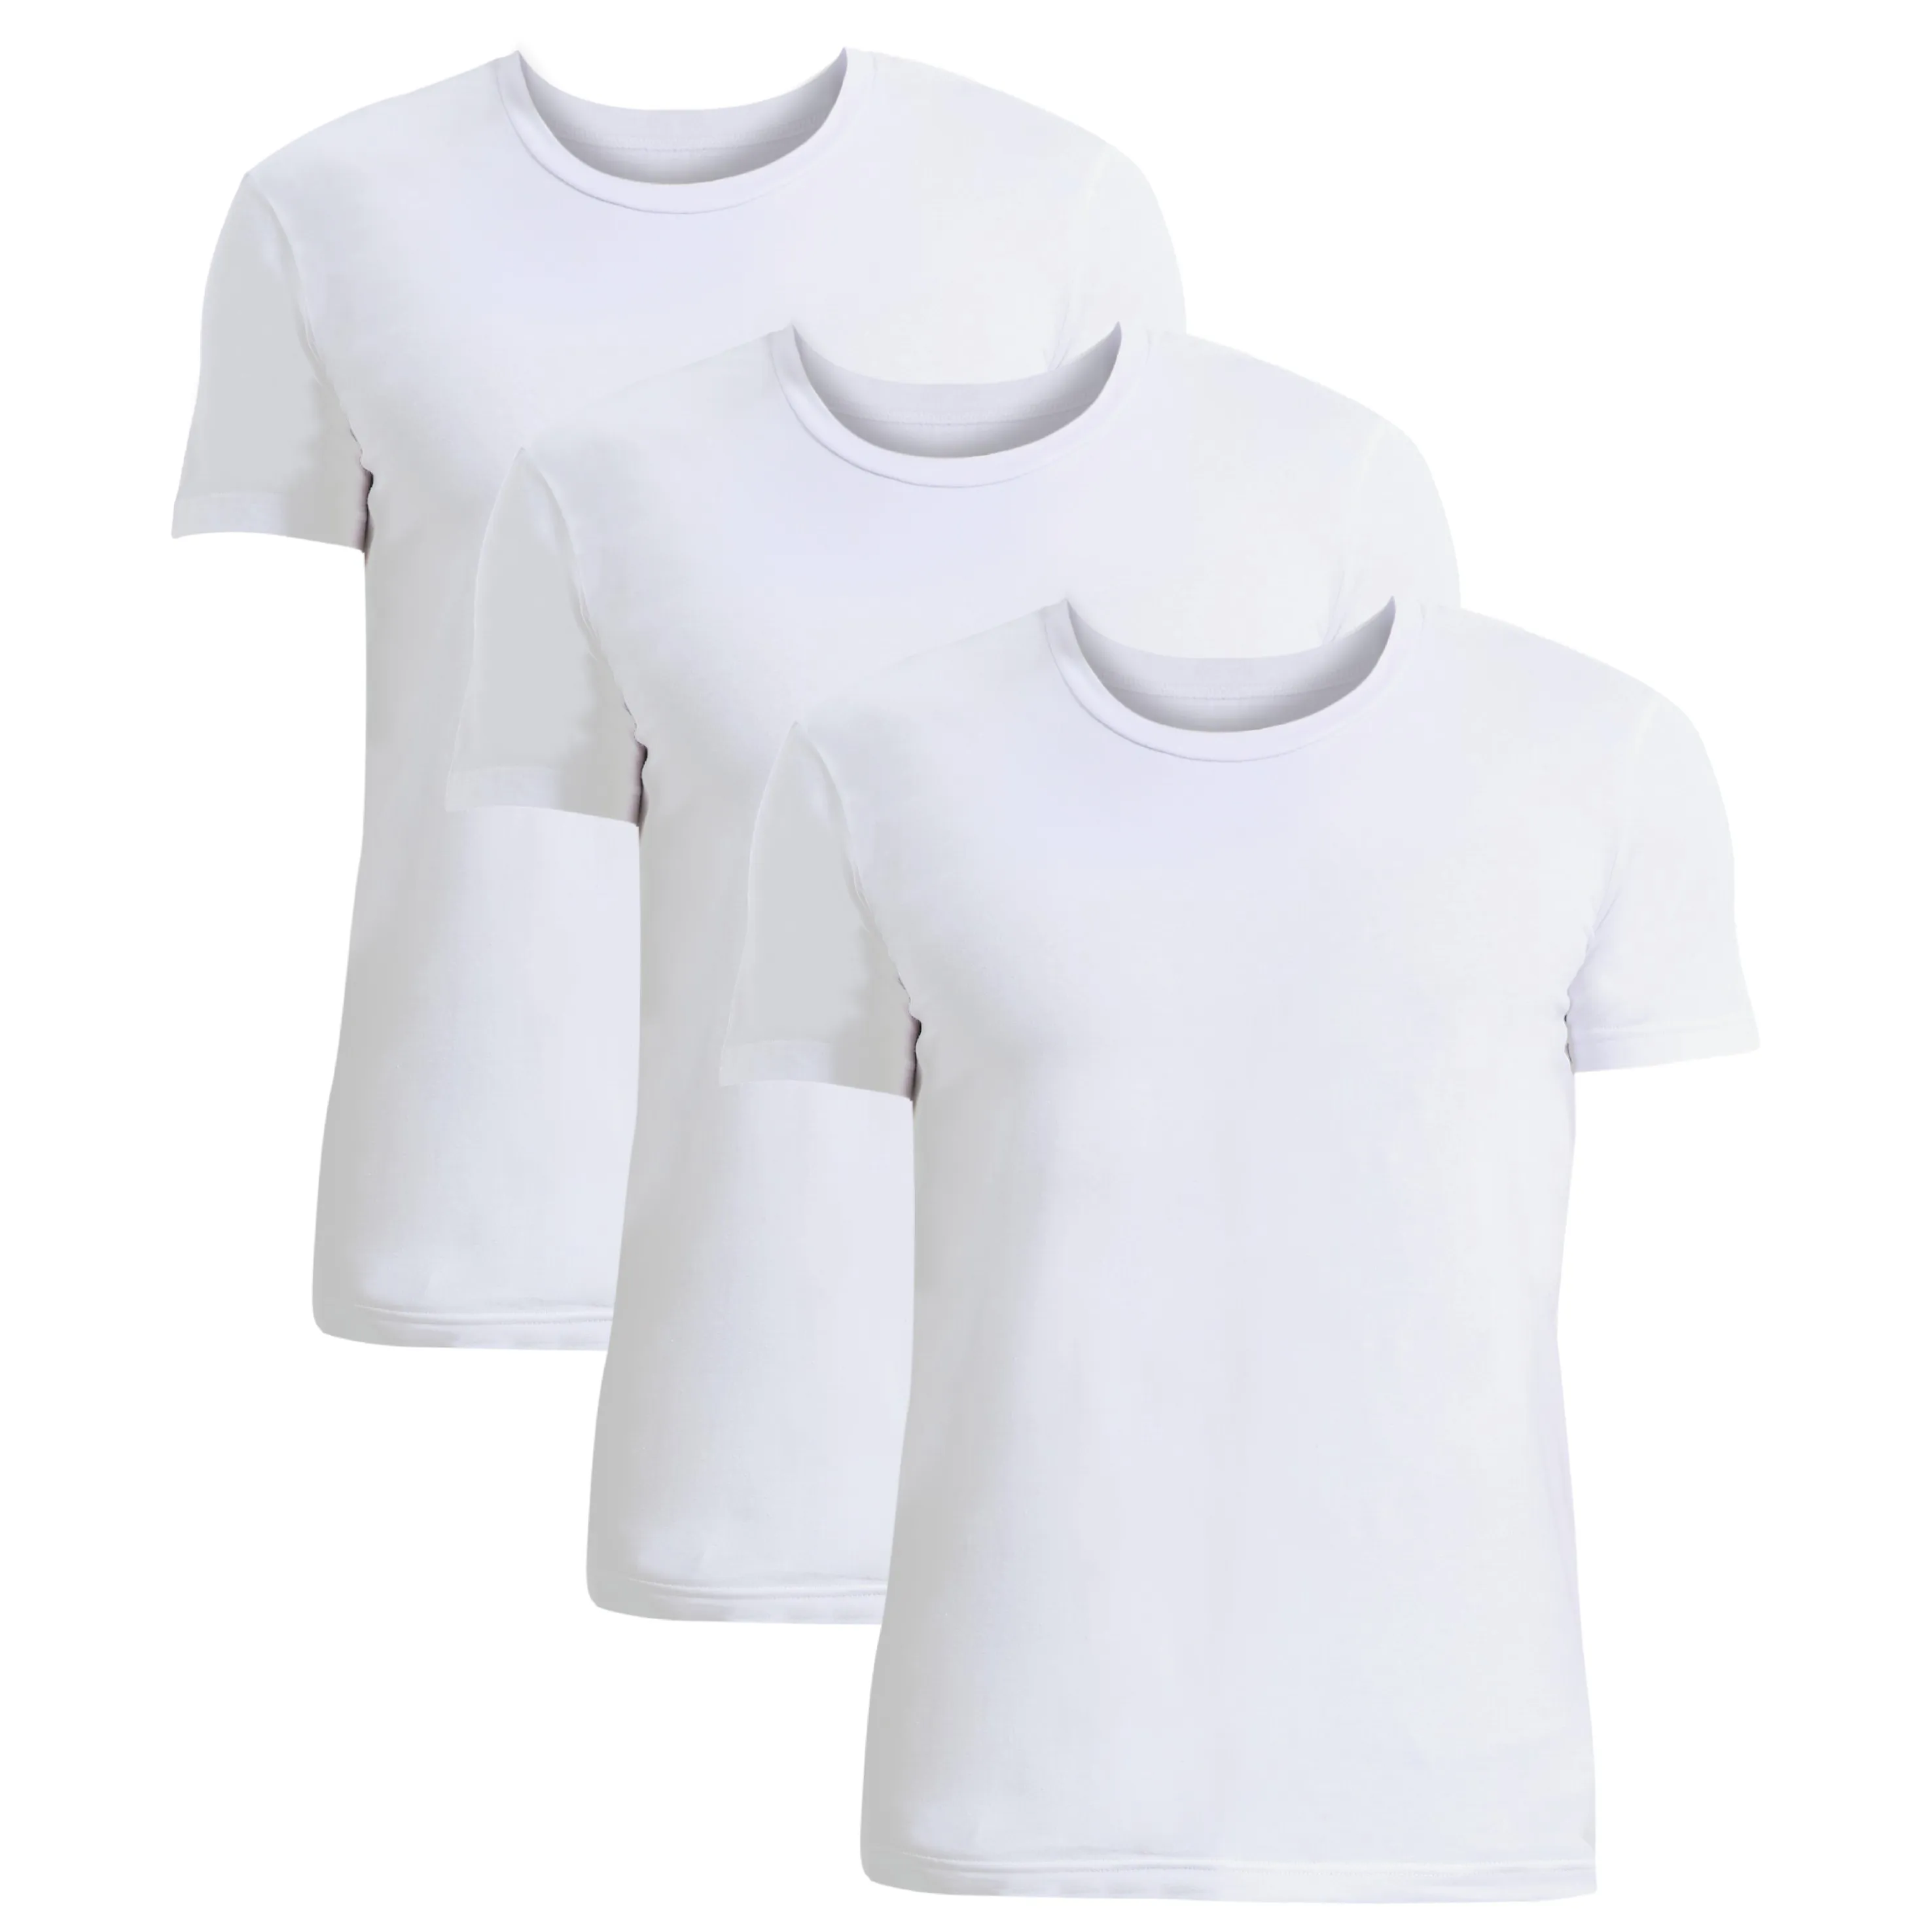 
wholesale Men round neck T-shirt v neck cotton soild color fitness men t-shirt 